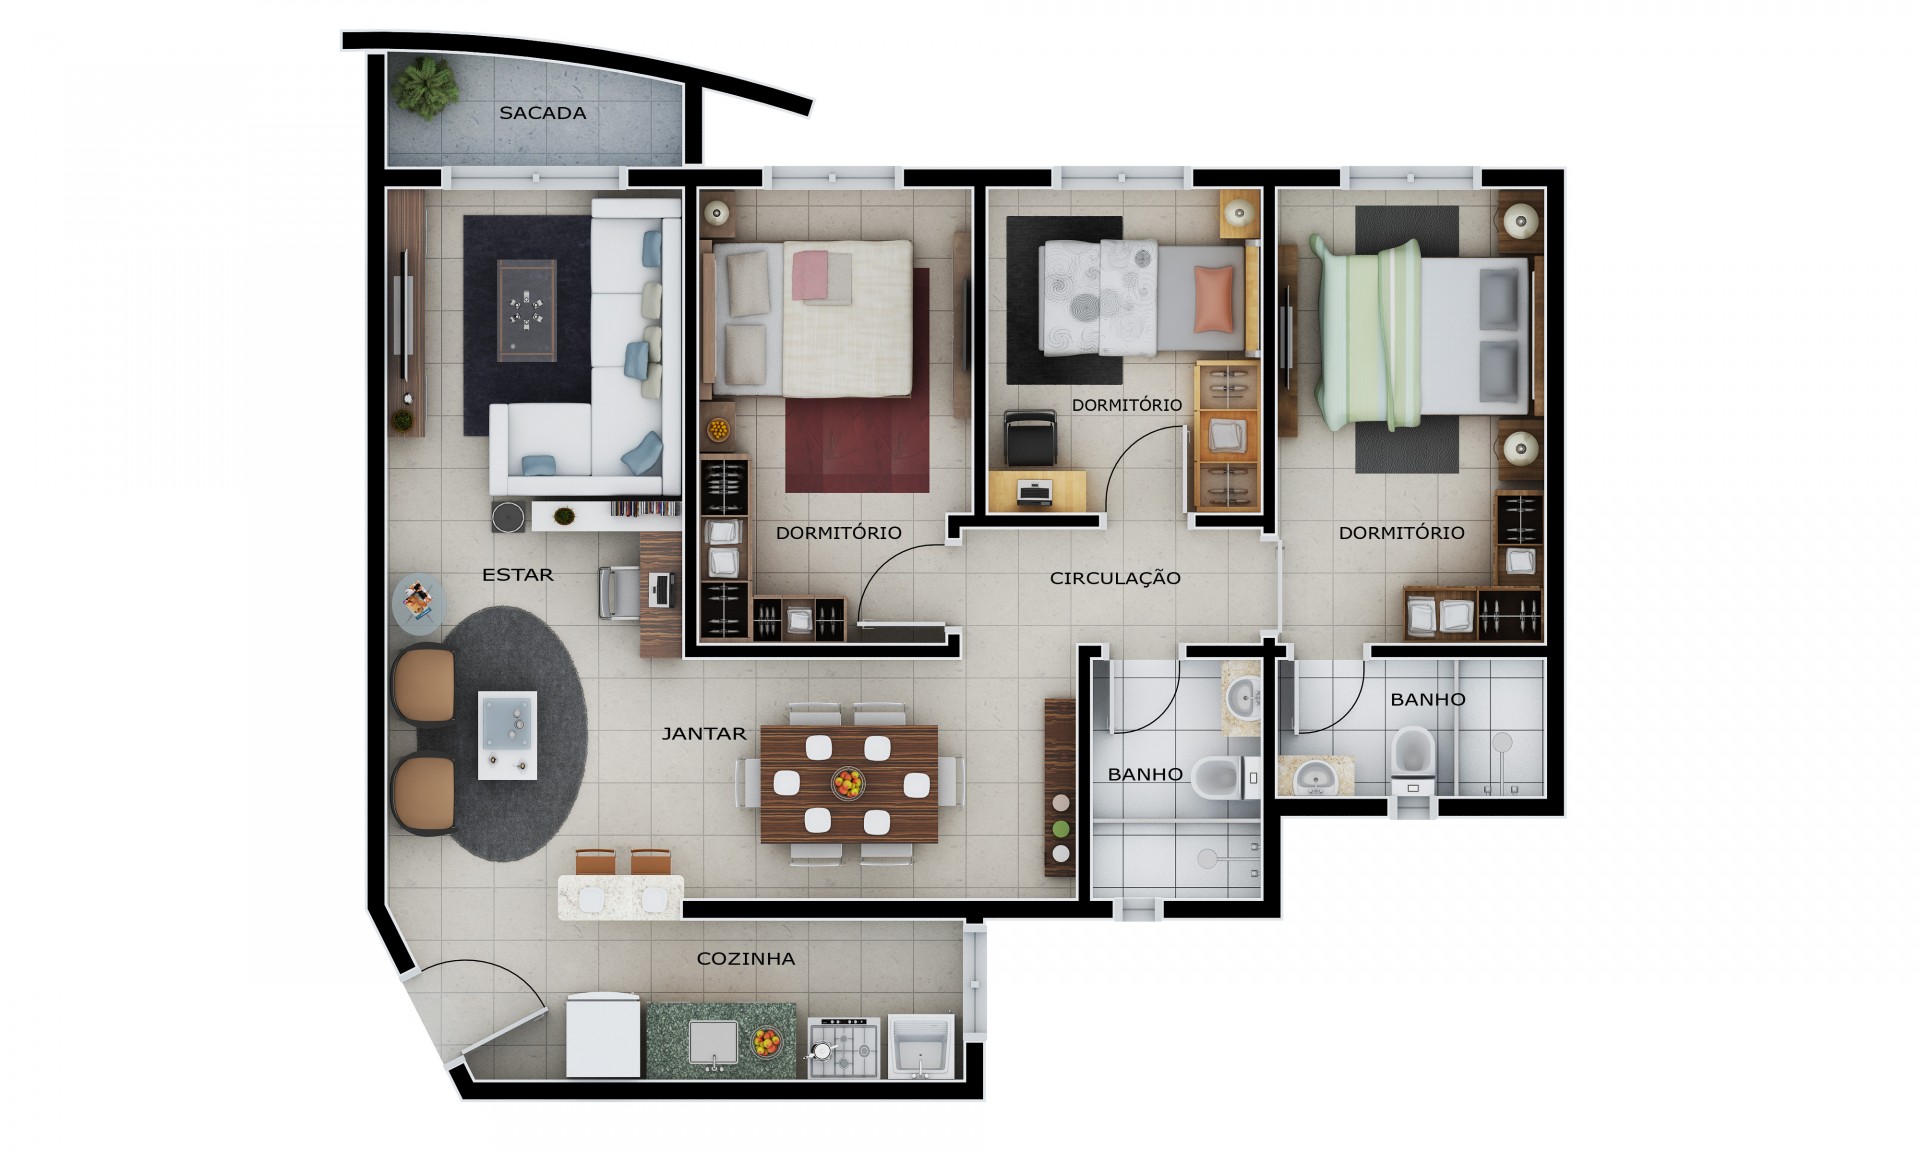 Apartamento com 3 dormitórios - Frente